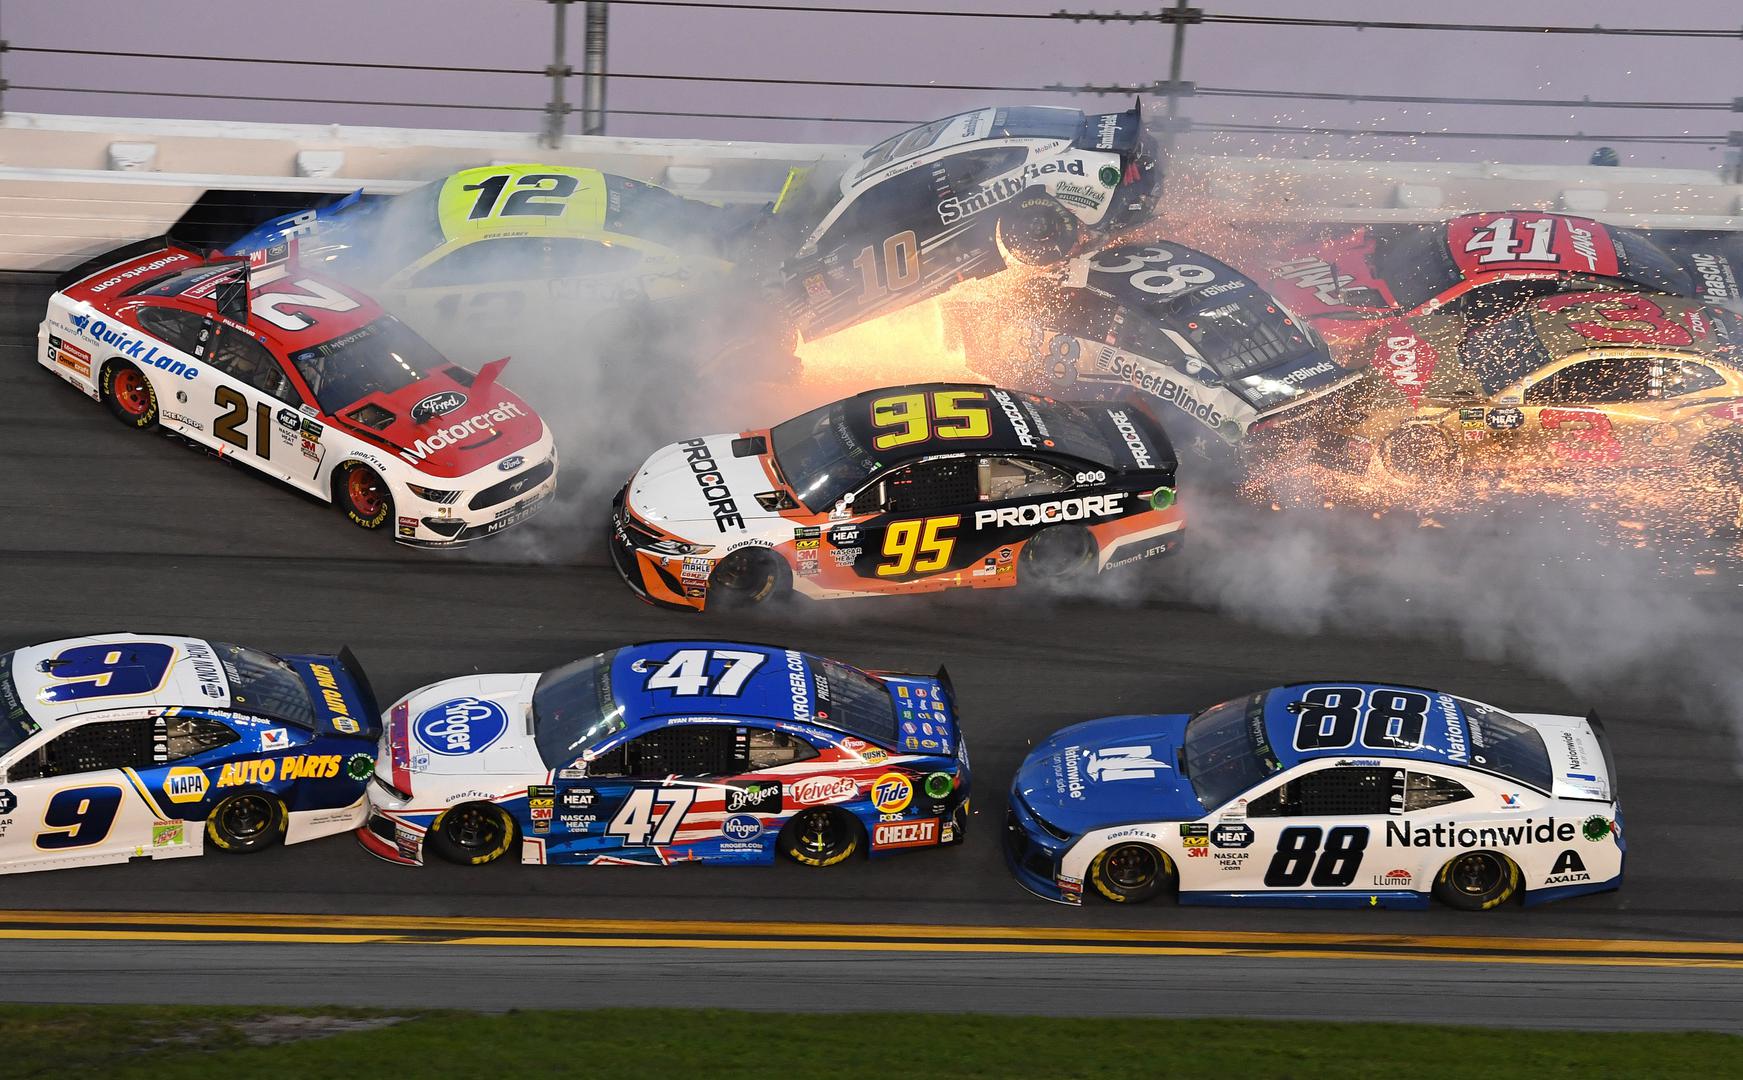 Čak 21 automobil sudjelovao je u spektakularnom sudaru u NASCAR-ovoj utrci Daytona 500. Utrka je dvaput prekidana zbog dva lančana sudara.